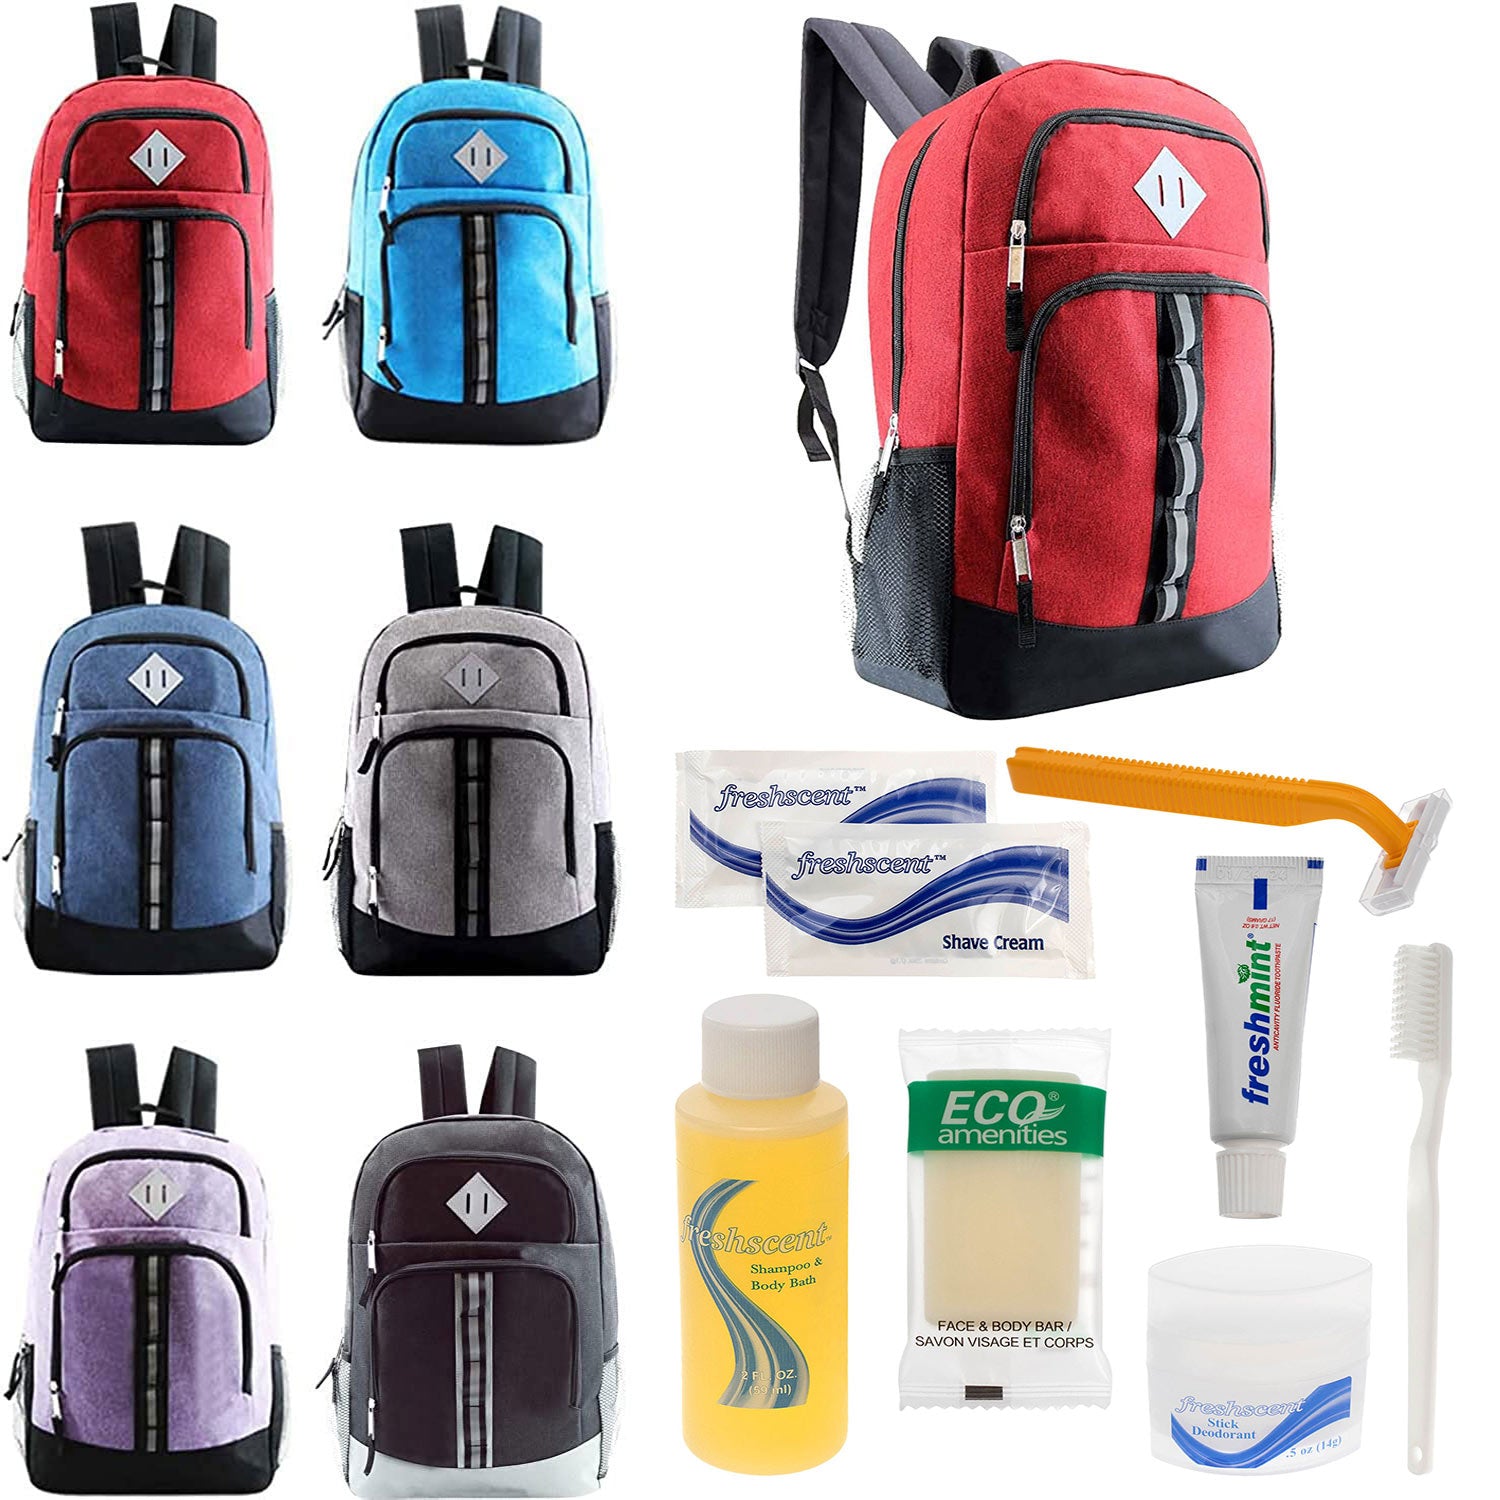 http://www.backpacksusa.com/cdn/shop/files/bulk-wholesale-homeless-care-box-18-inch-backpacks-hygiene-kits-BPHK-115-12.jpg?v=1696518040